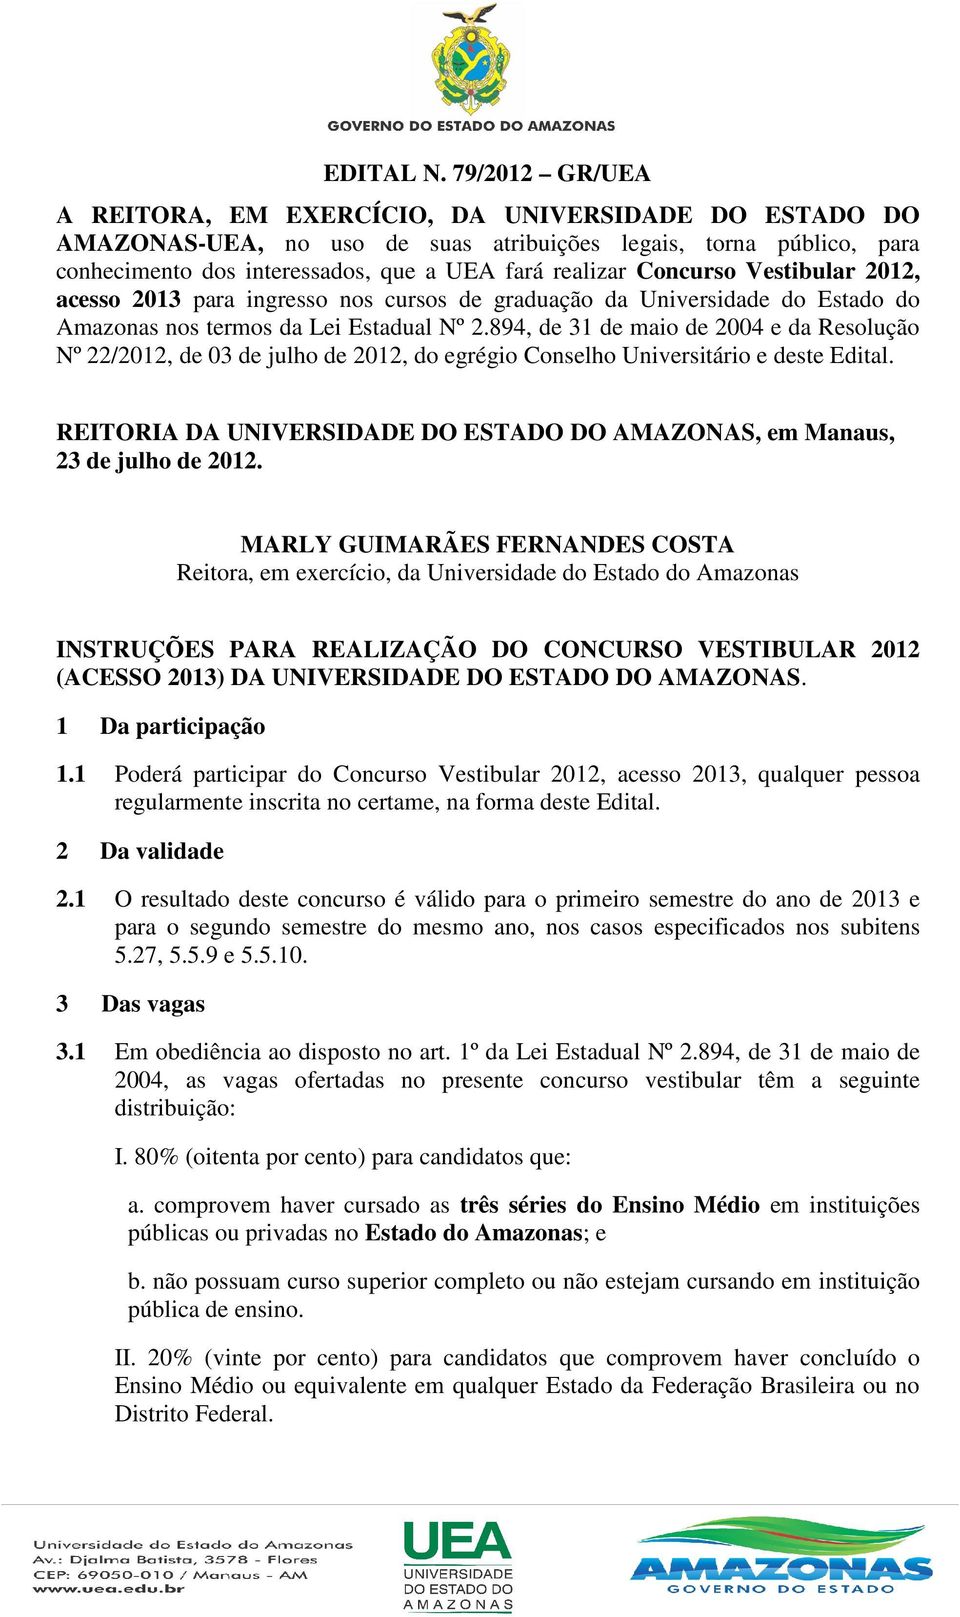 Concurso Vestibular 2012, acesso 2013 para ingresso nos cursos de graduação da Universidade do Estado do Amazonas nos termos da Lei Estadual Nº 2.